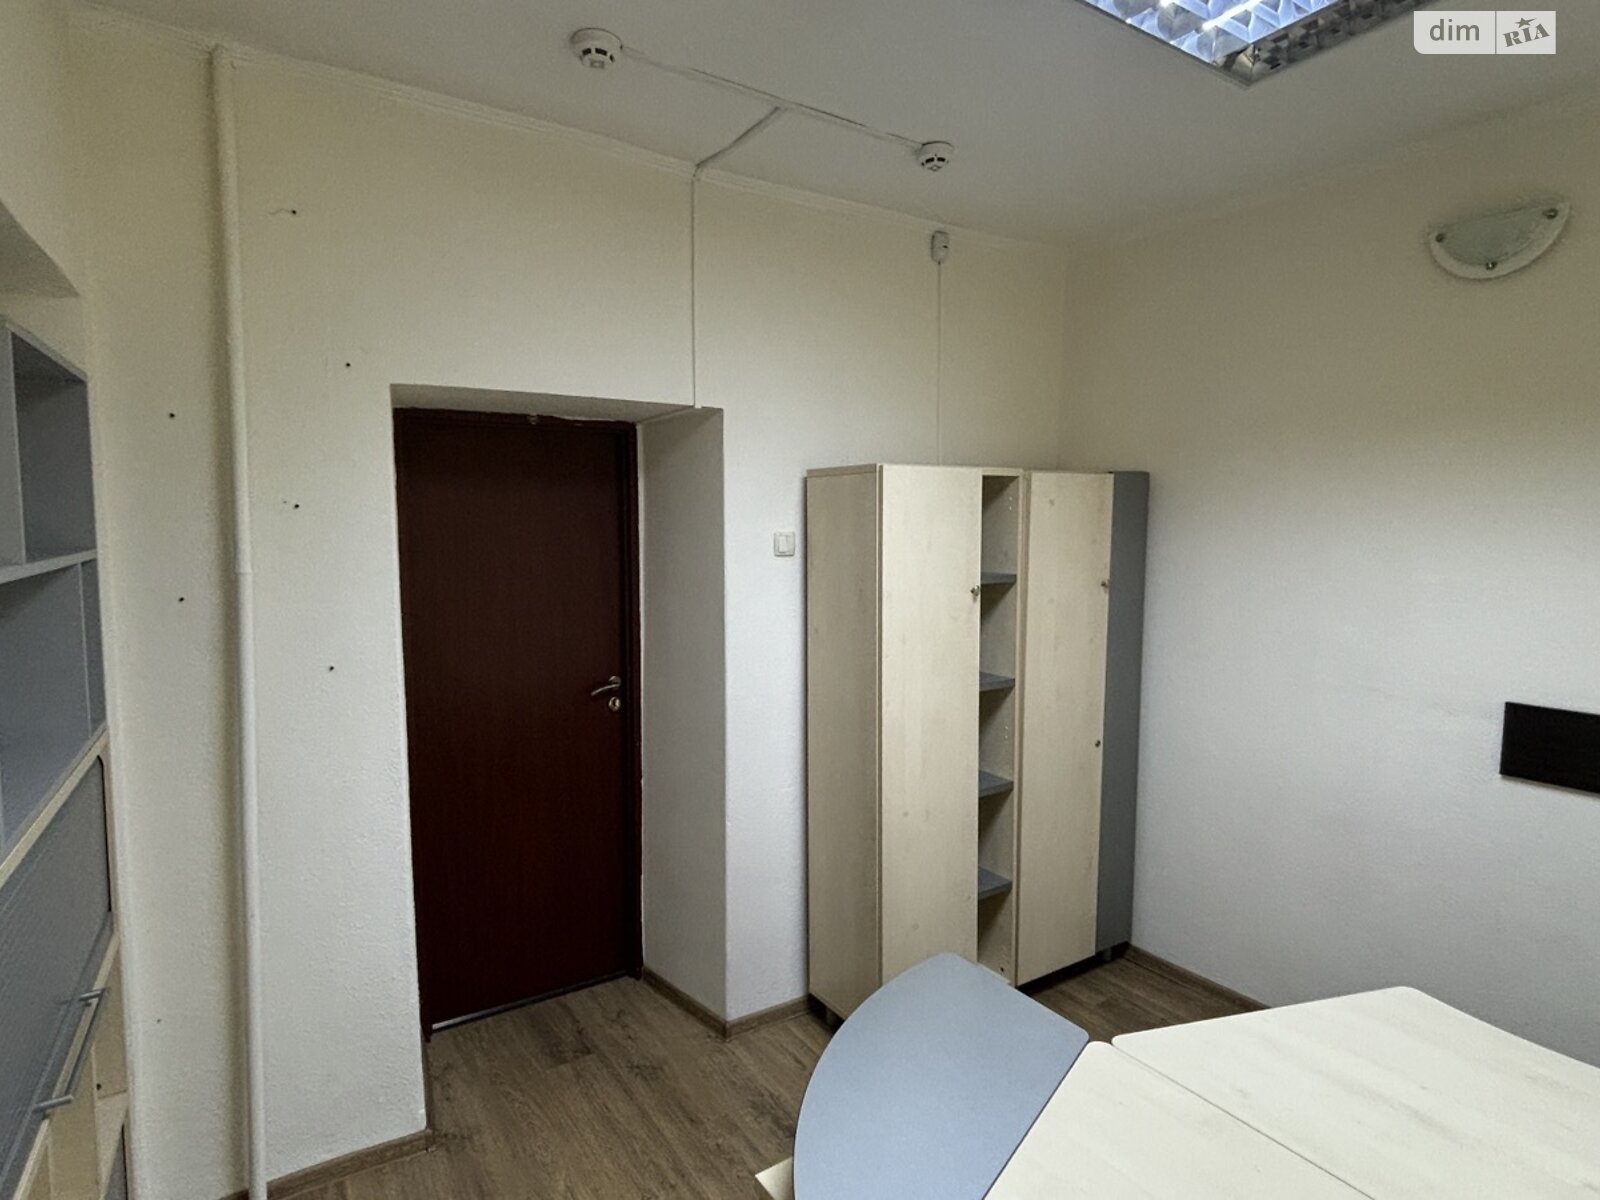 Аренда офисного помещения в Киеве, Михайловская площадь 14, помещений - 1, этаж - 2 фото 1